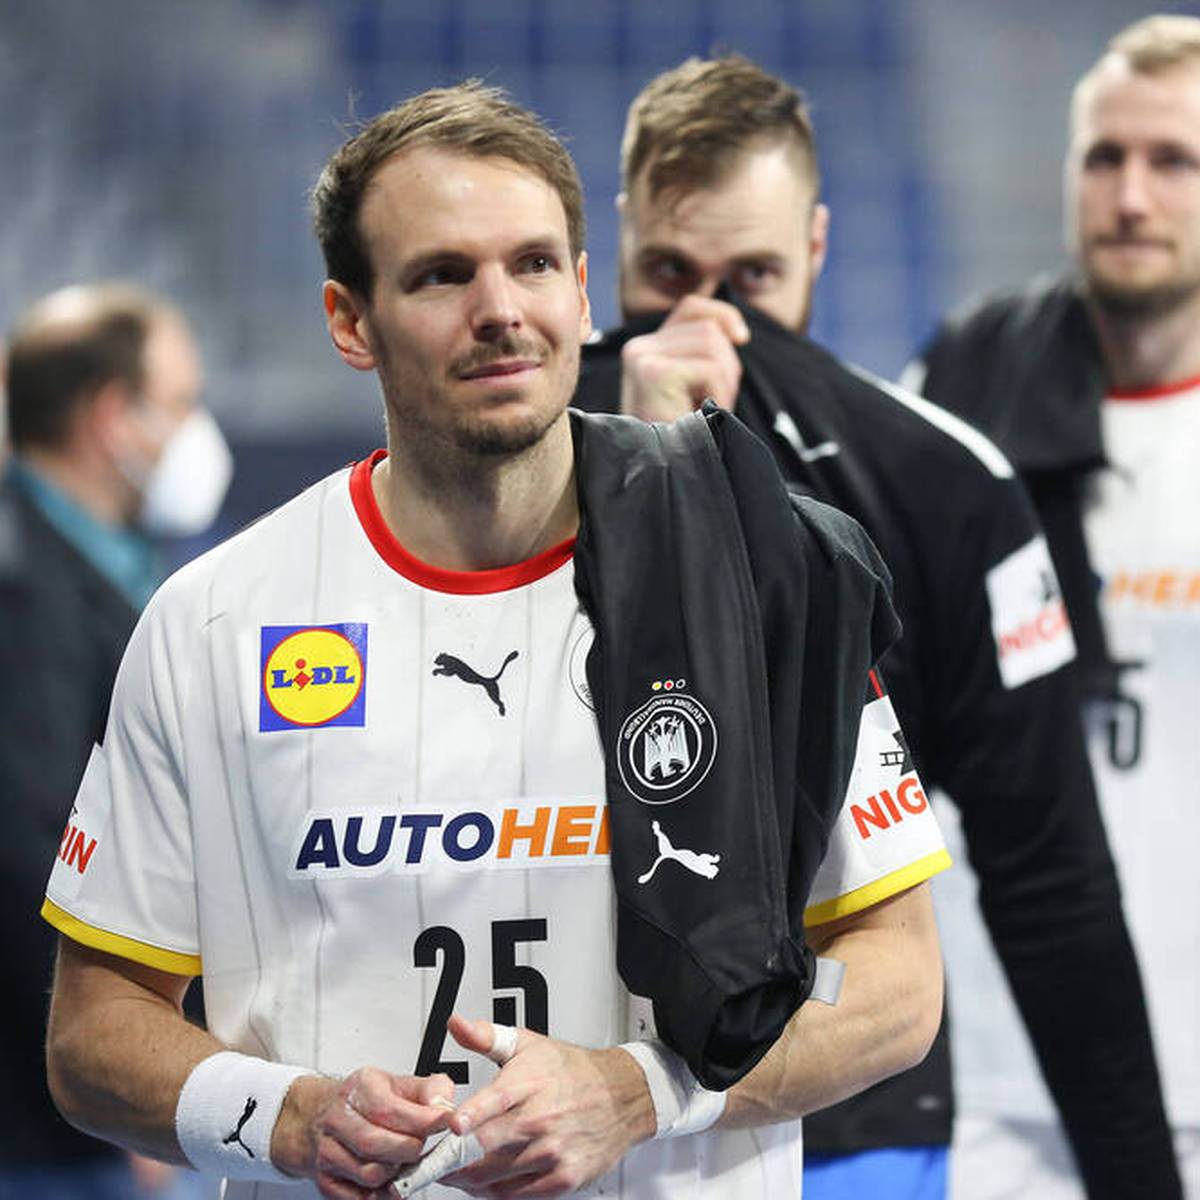 Handball-EM 2022 Kai Häfner freut sich auf Härtetest mit Deutschland gegen Frankreich